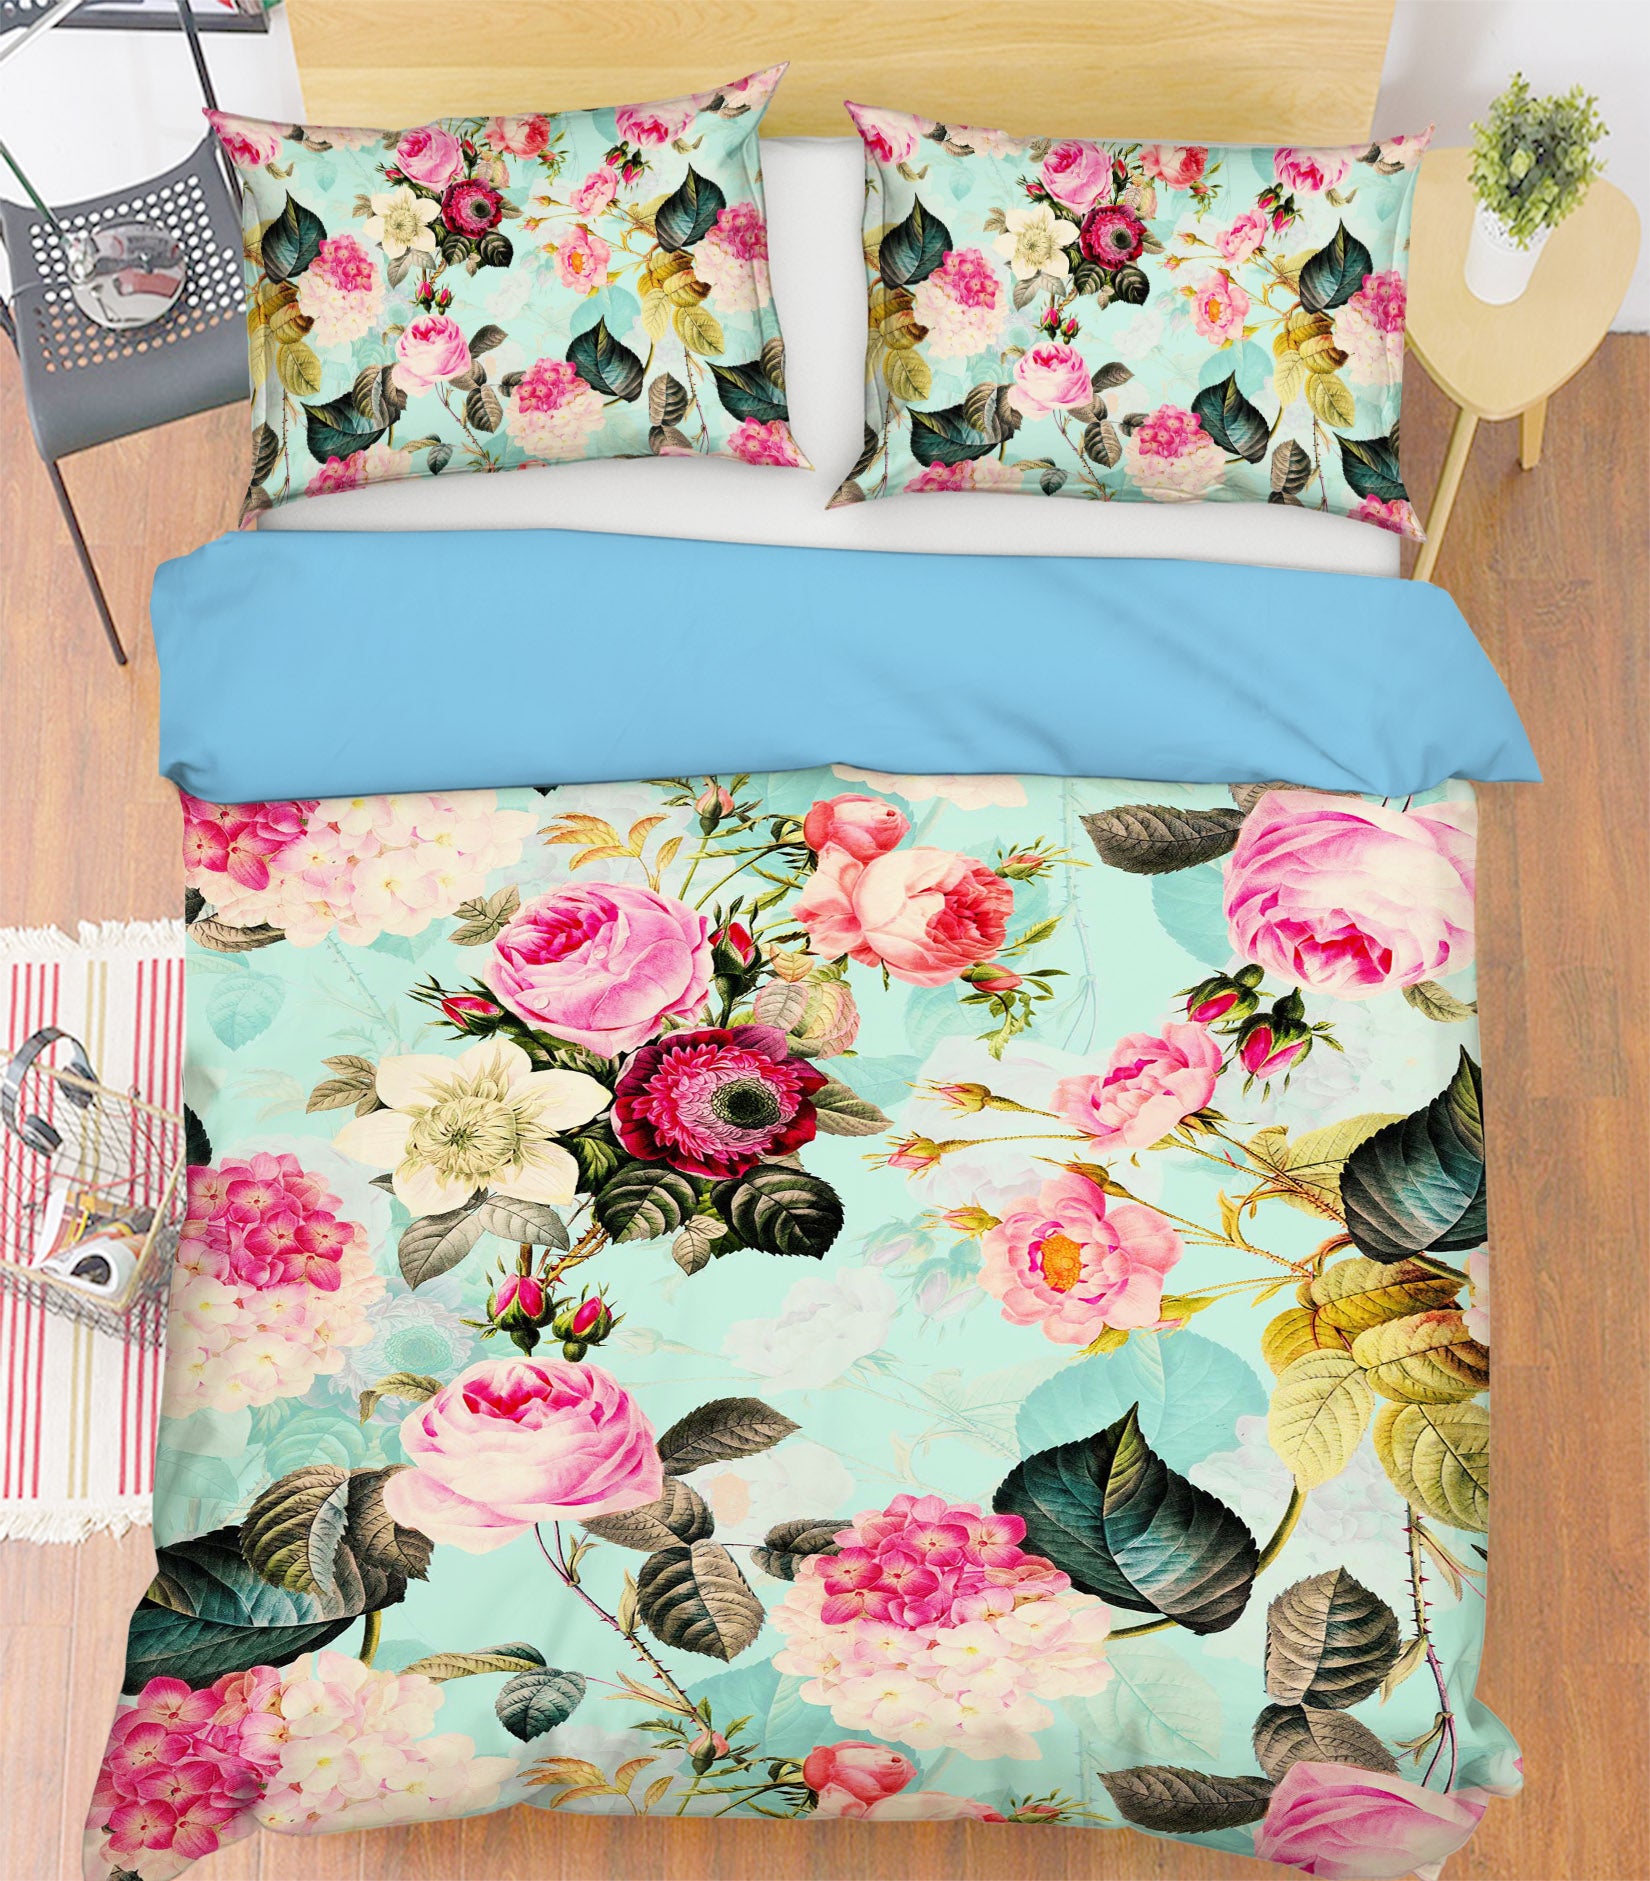 3D Rose Peony 133 Uta Naumann Bedding Bed Pillowcases Quilt